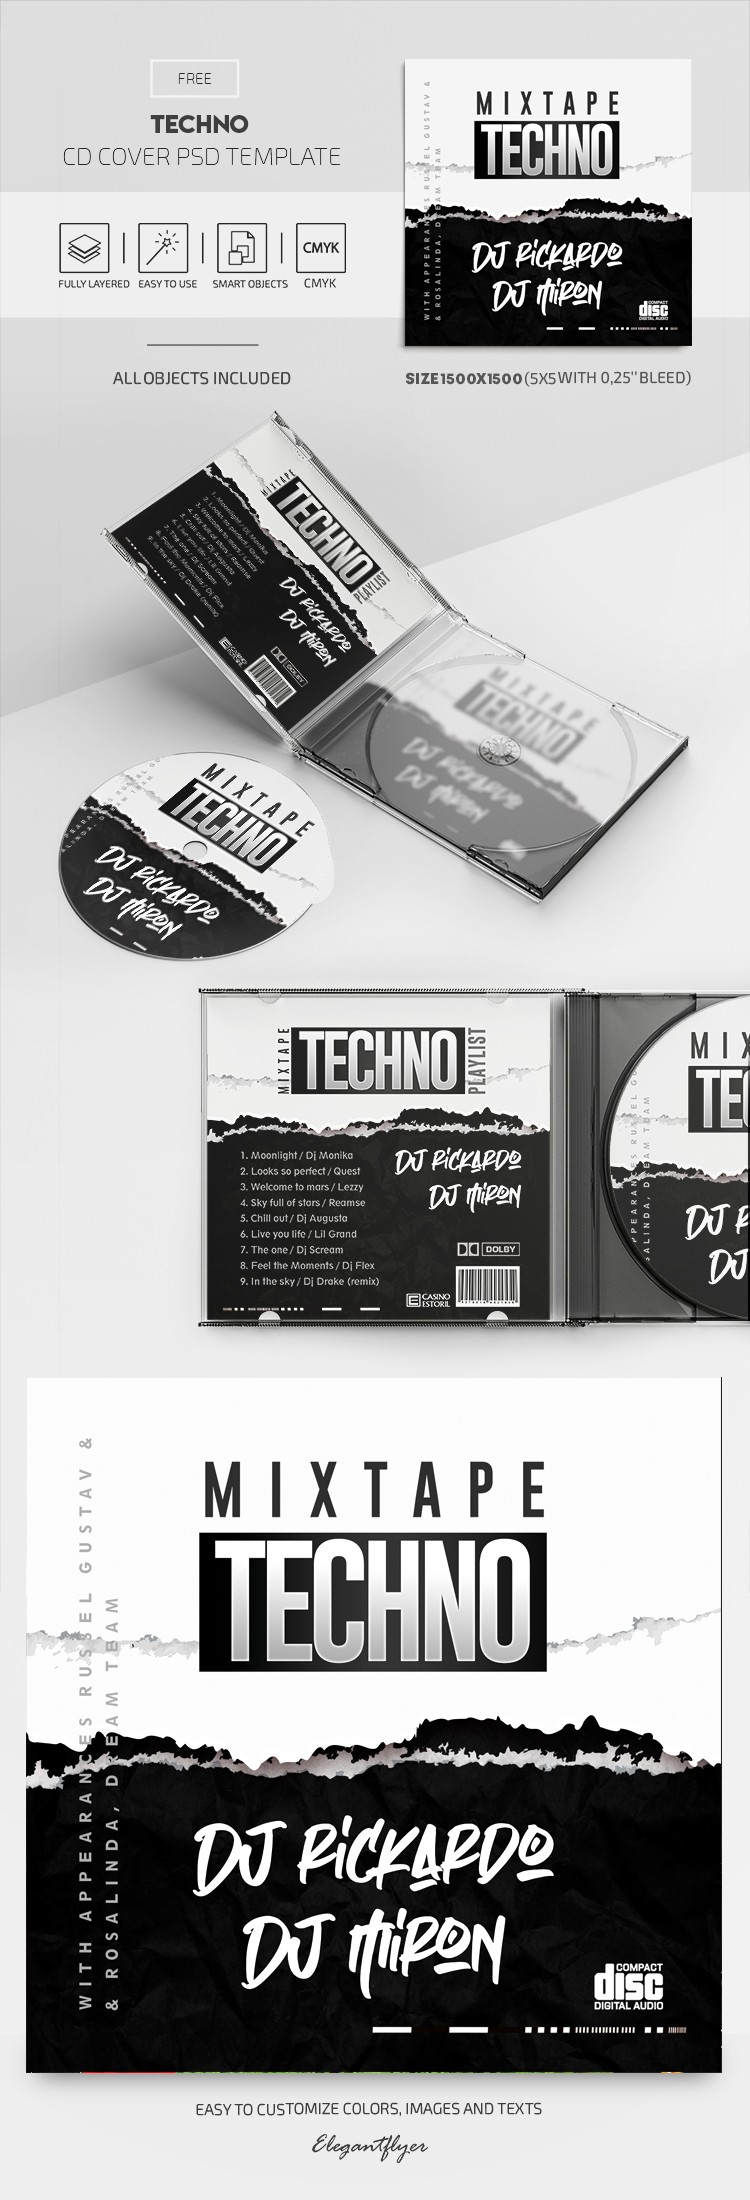 Couverture de CD Techno by ElegantFlyer